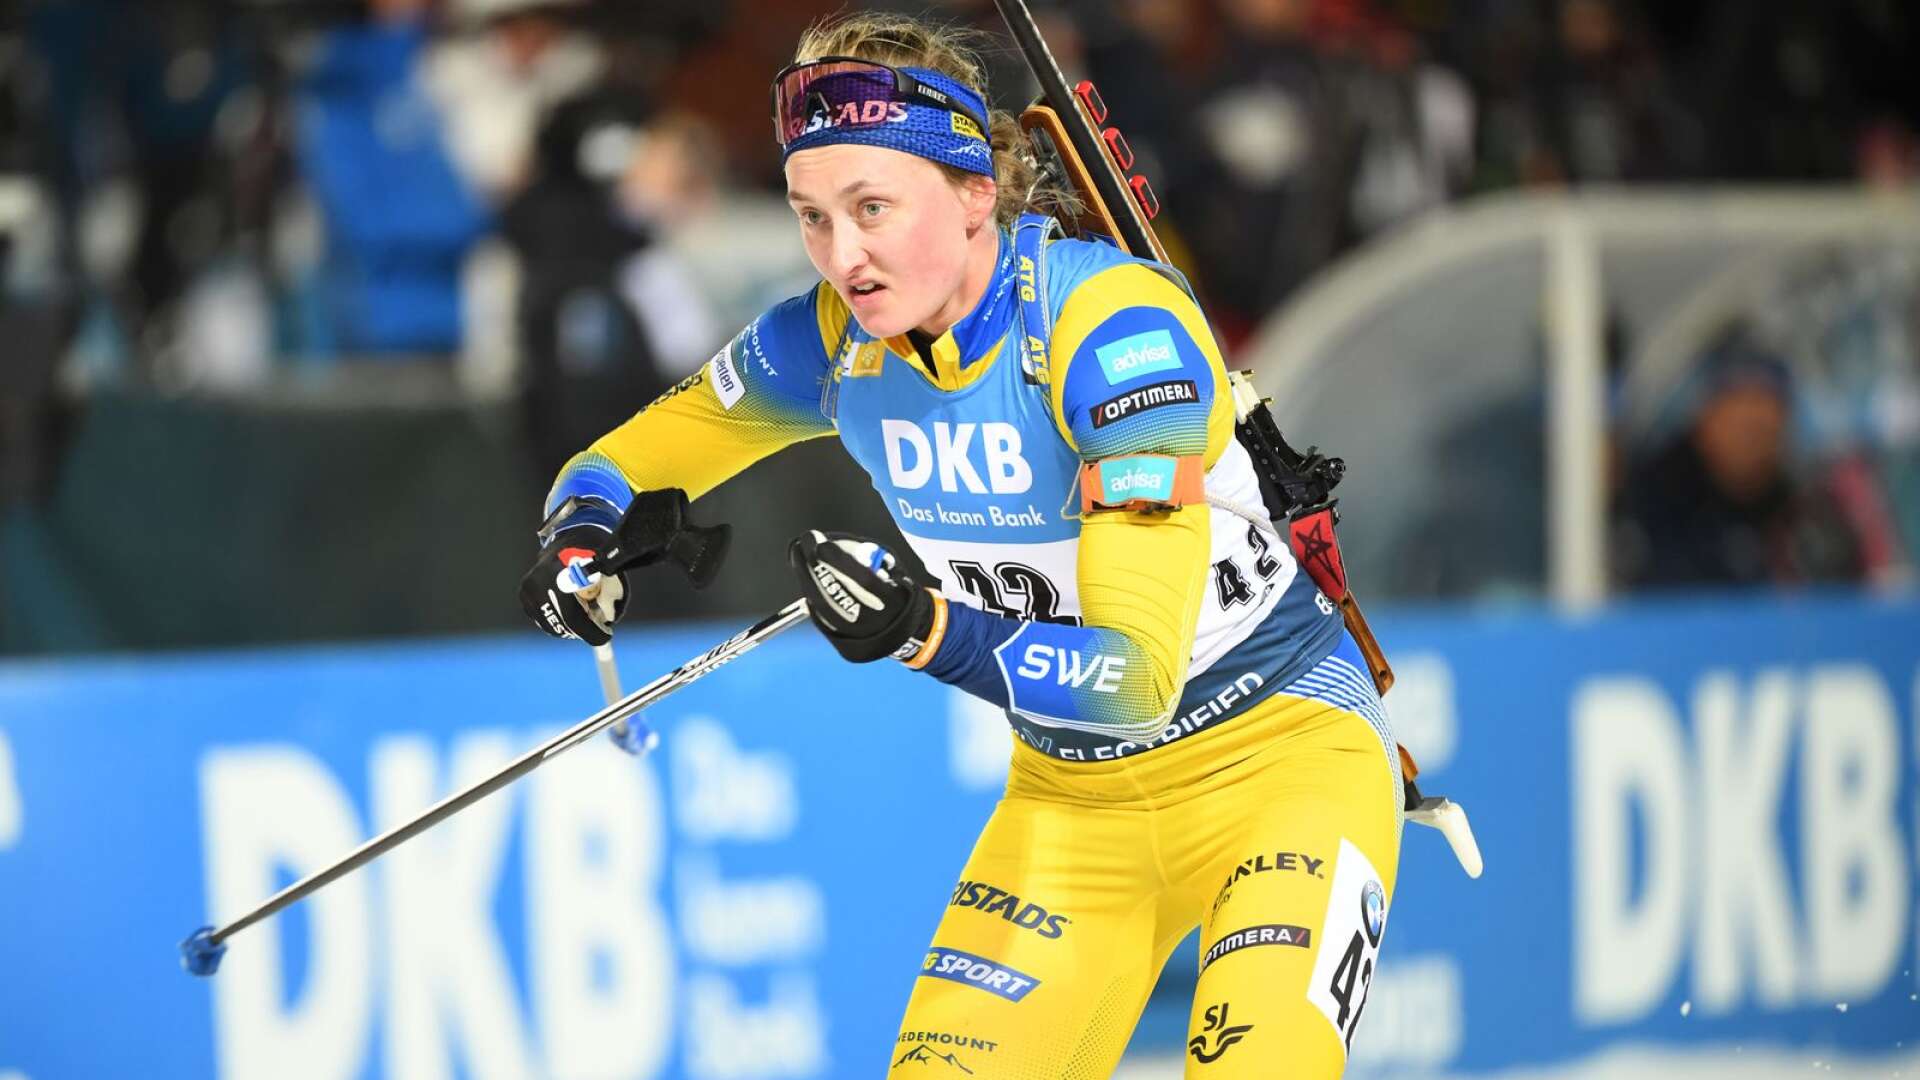 Det har varit en tuff säsong för Emma Nilsson från Gräsmark. Nu väntar IBU-cup i Slovakien i stället för världscupen.